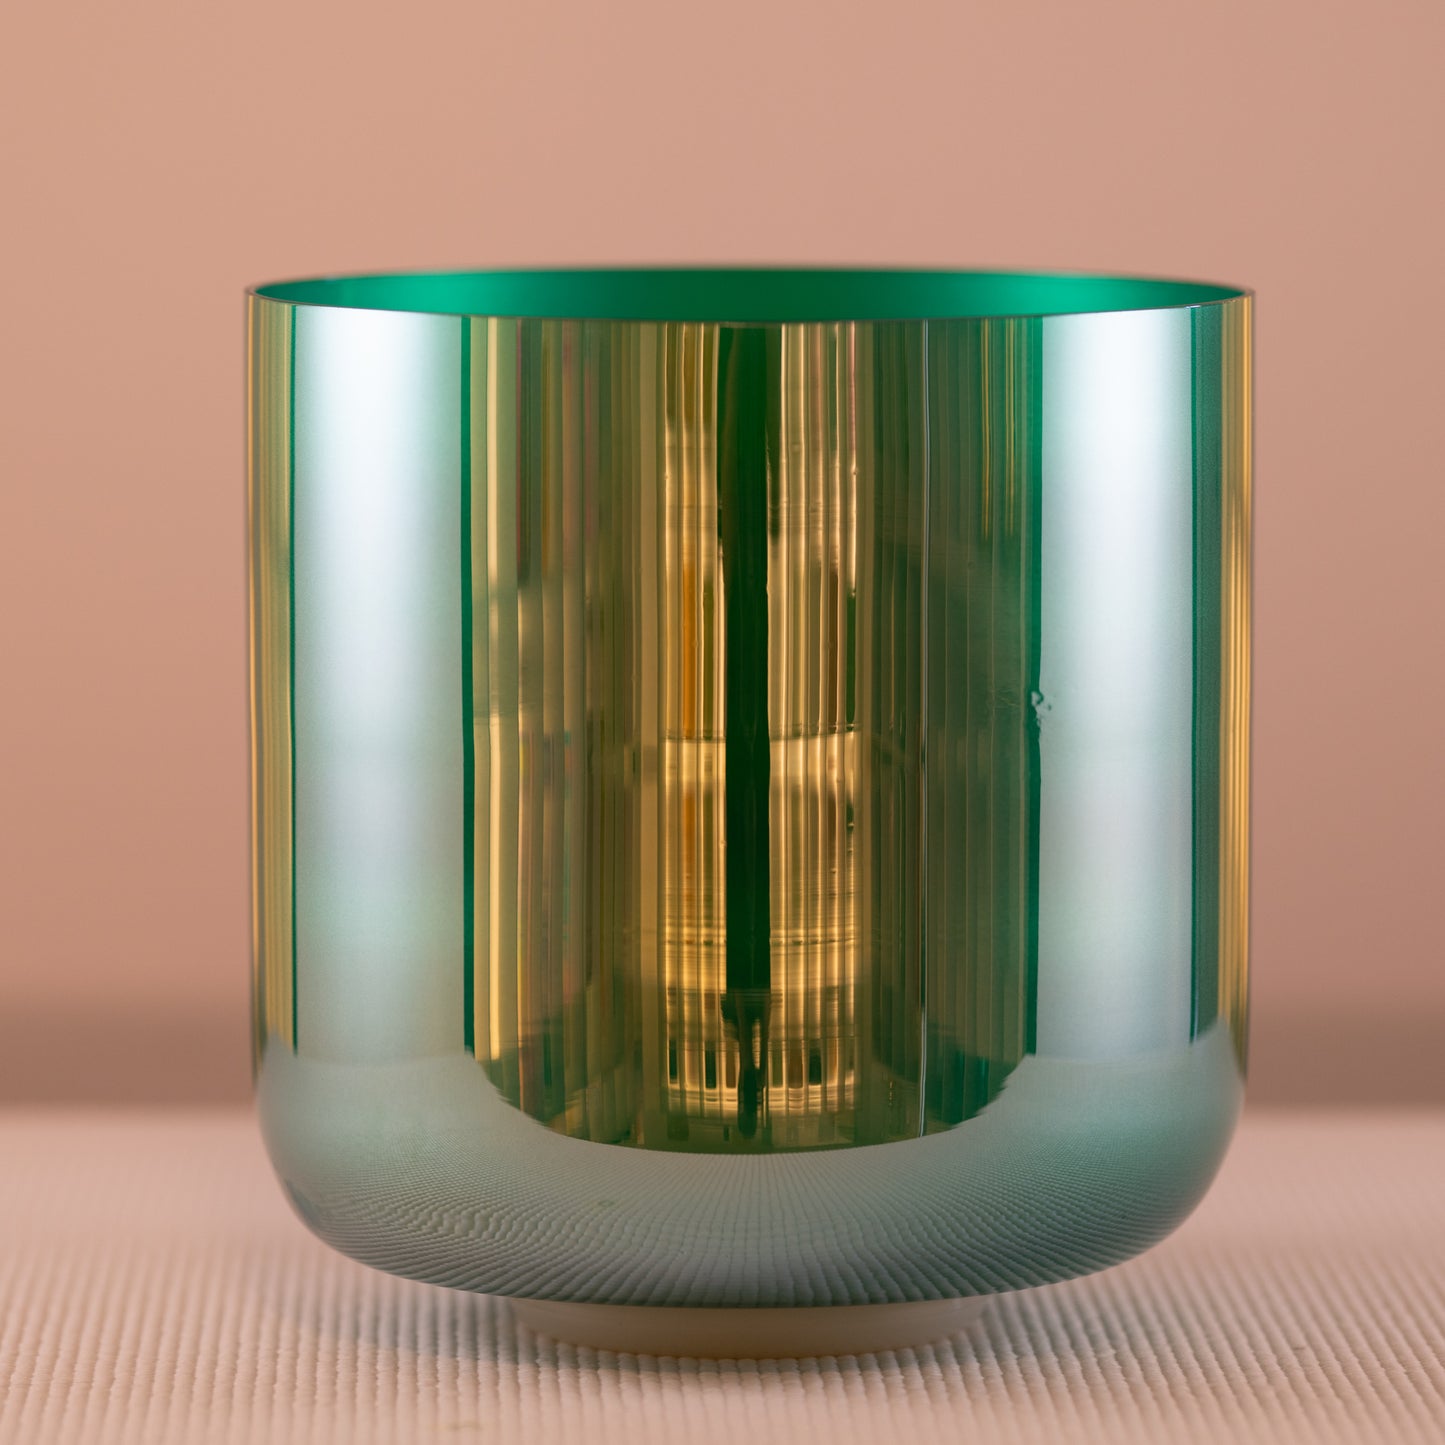 9.25" D#-47 Emerald Color Crystal Singing Bowl, Sacred Singing Bowls